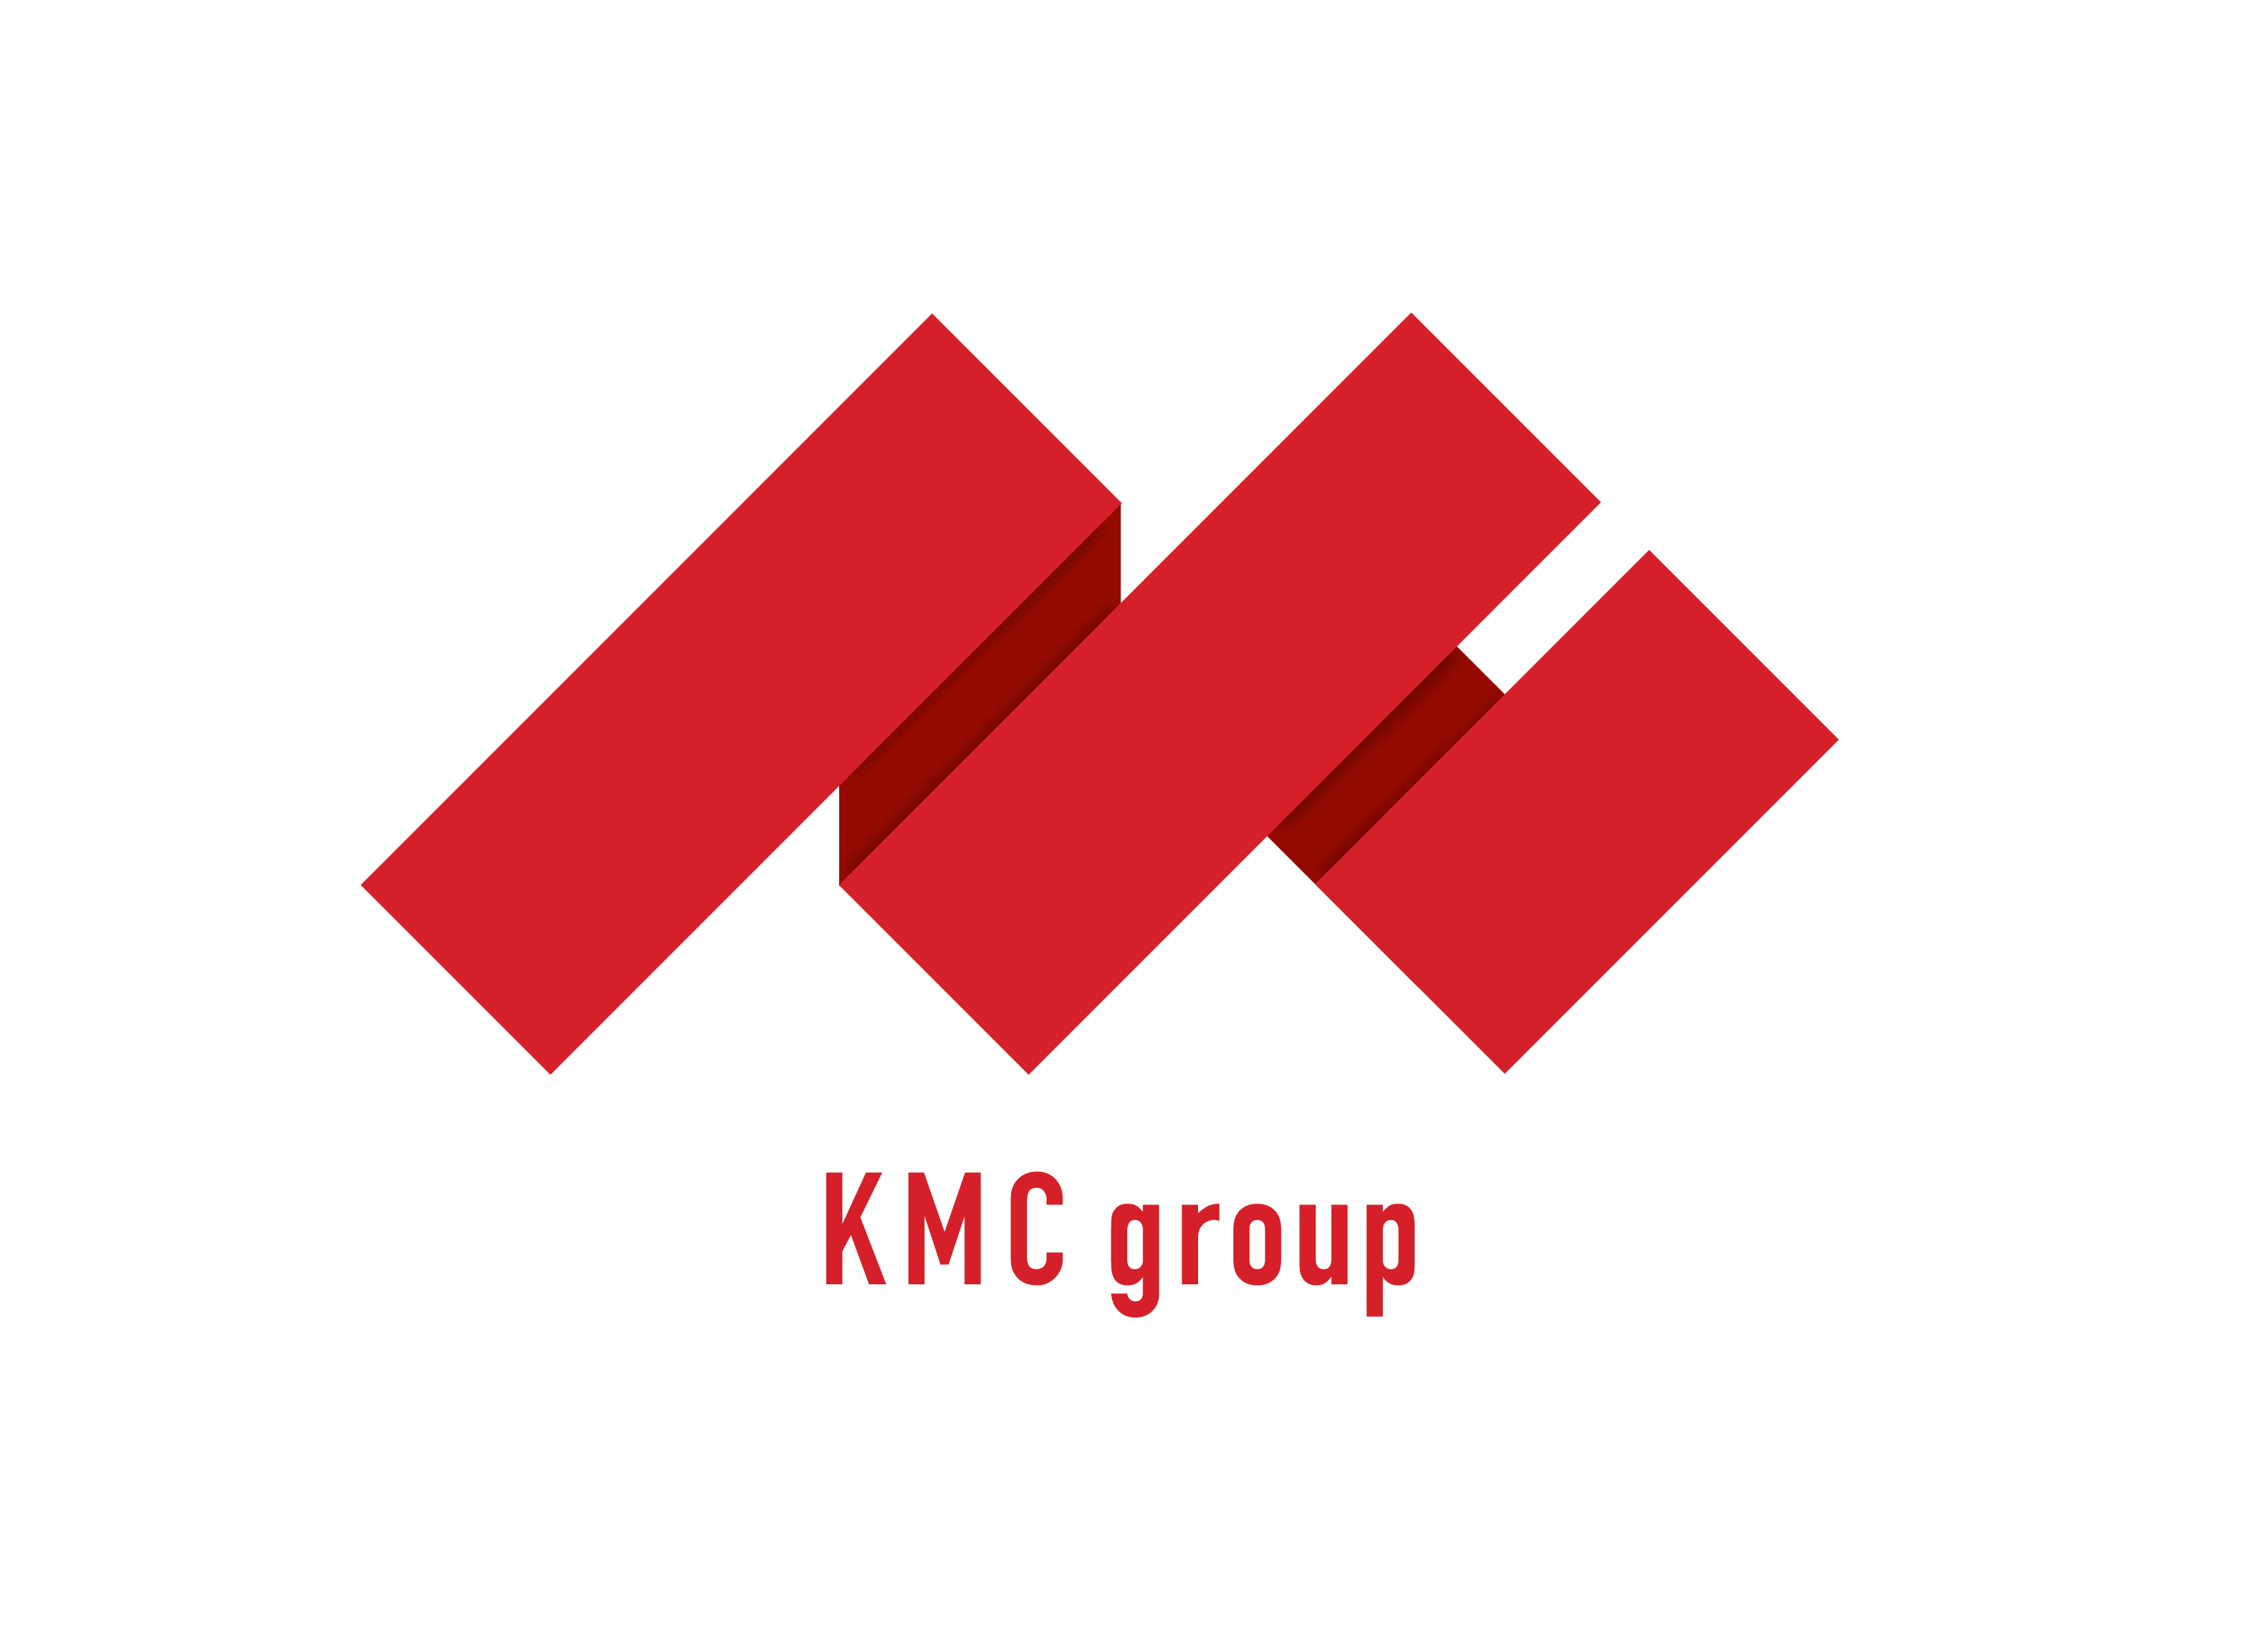 KMC group